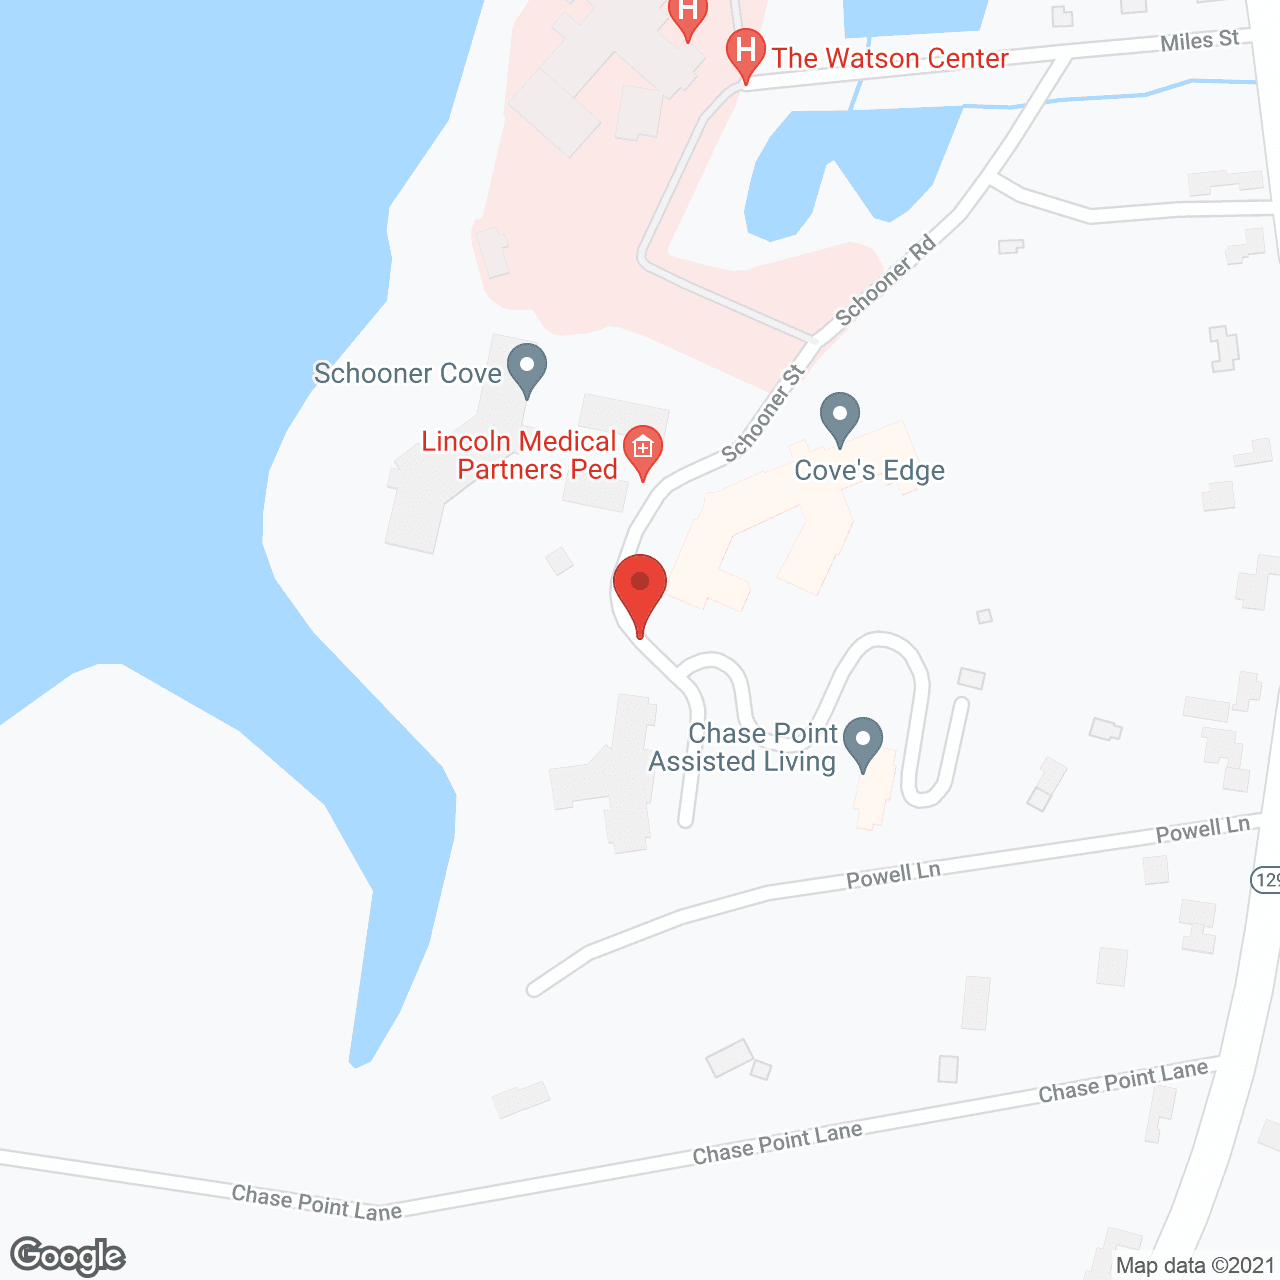 Schooner Cove in google map